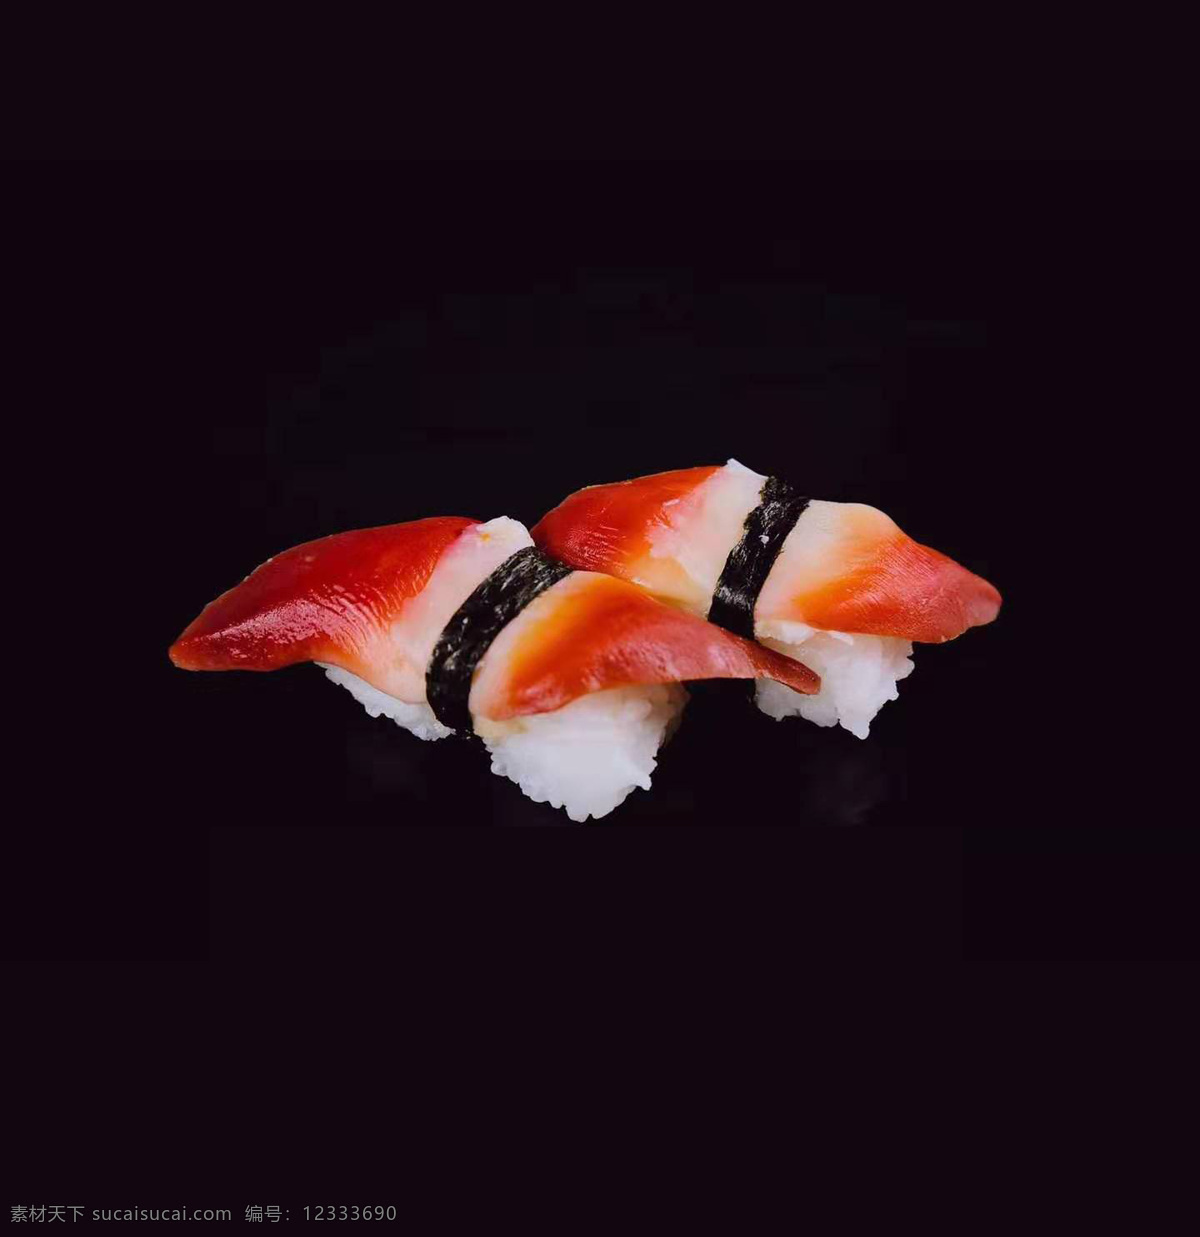 北极贝寿司 寿司 日本寿司 寿司卷 手握寿司 餐饮美食 西餐美食